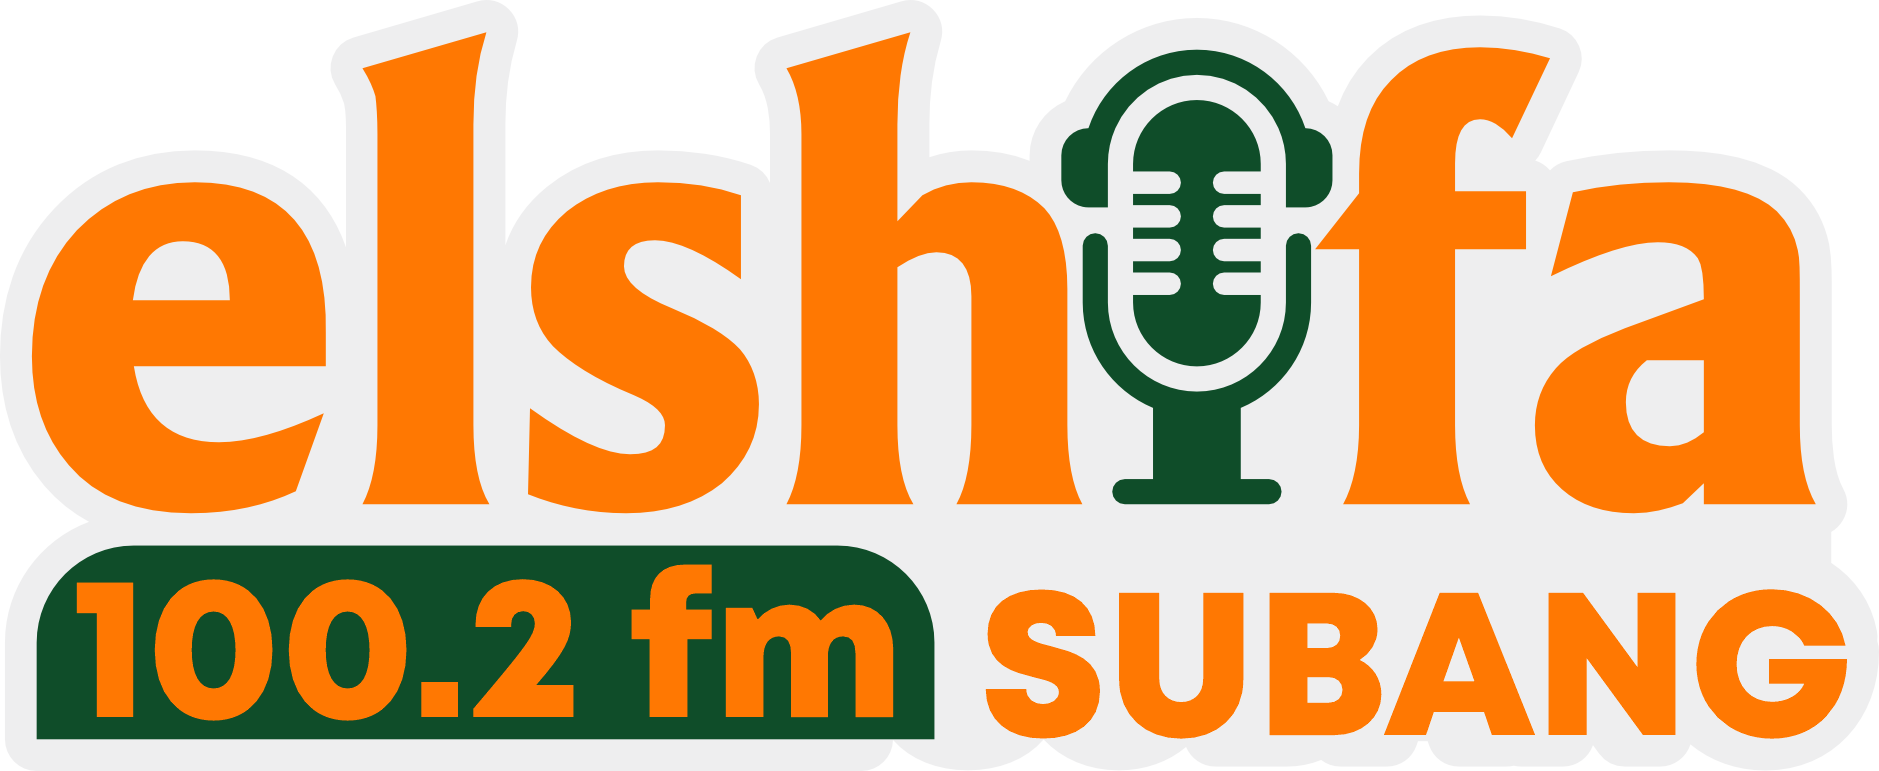 25. Logo Elshifa Radio NEW